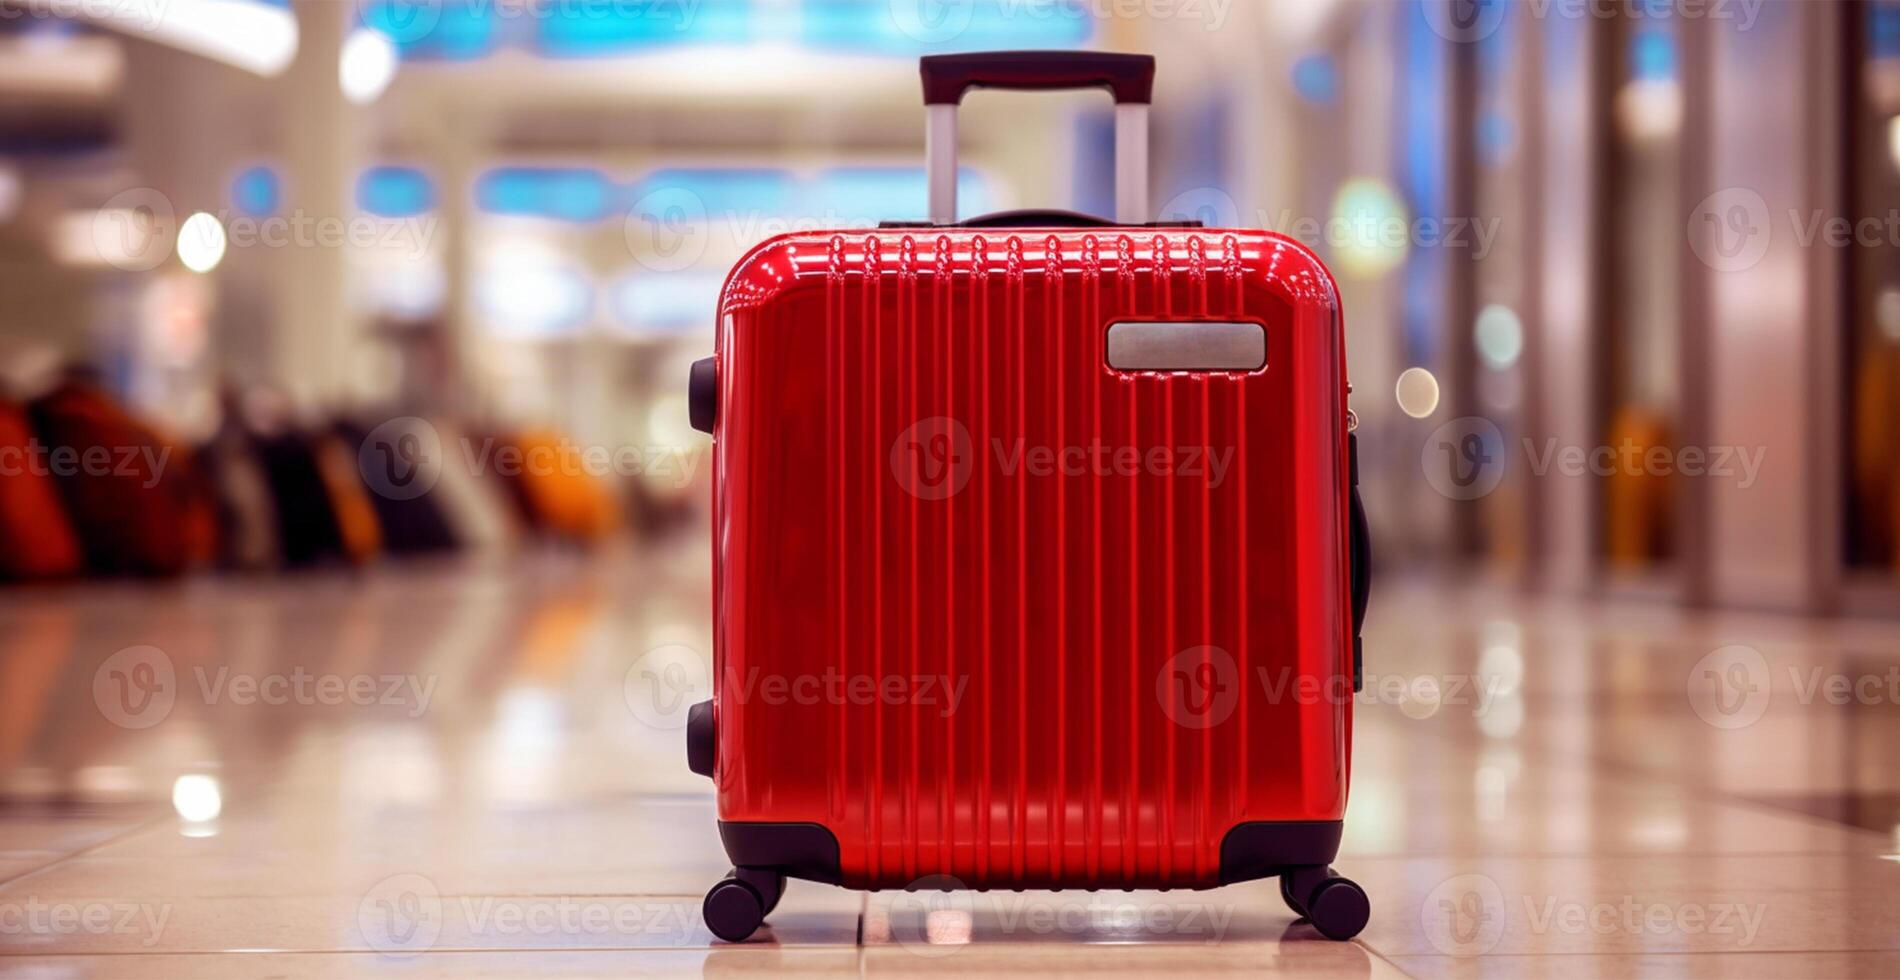 vermelho mala, bagagem às a aeroporto - ai gerado imagem foto